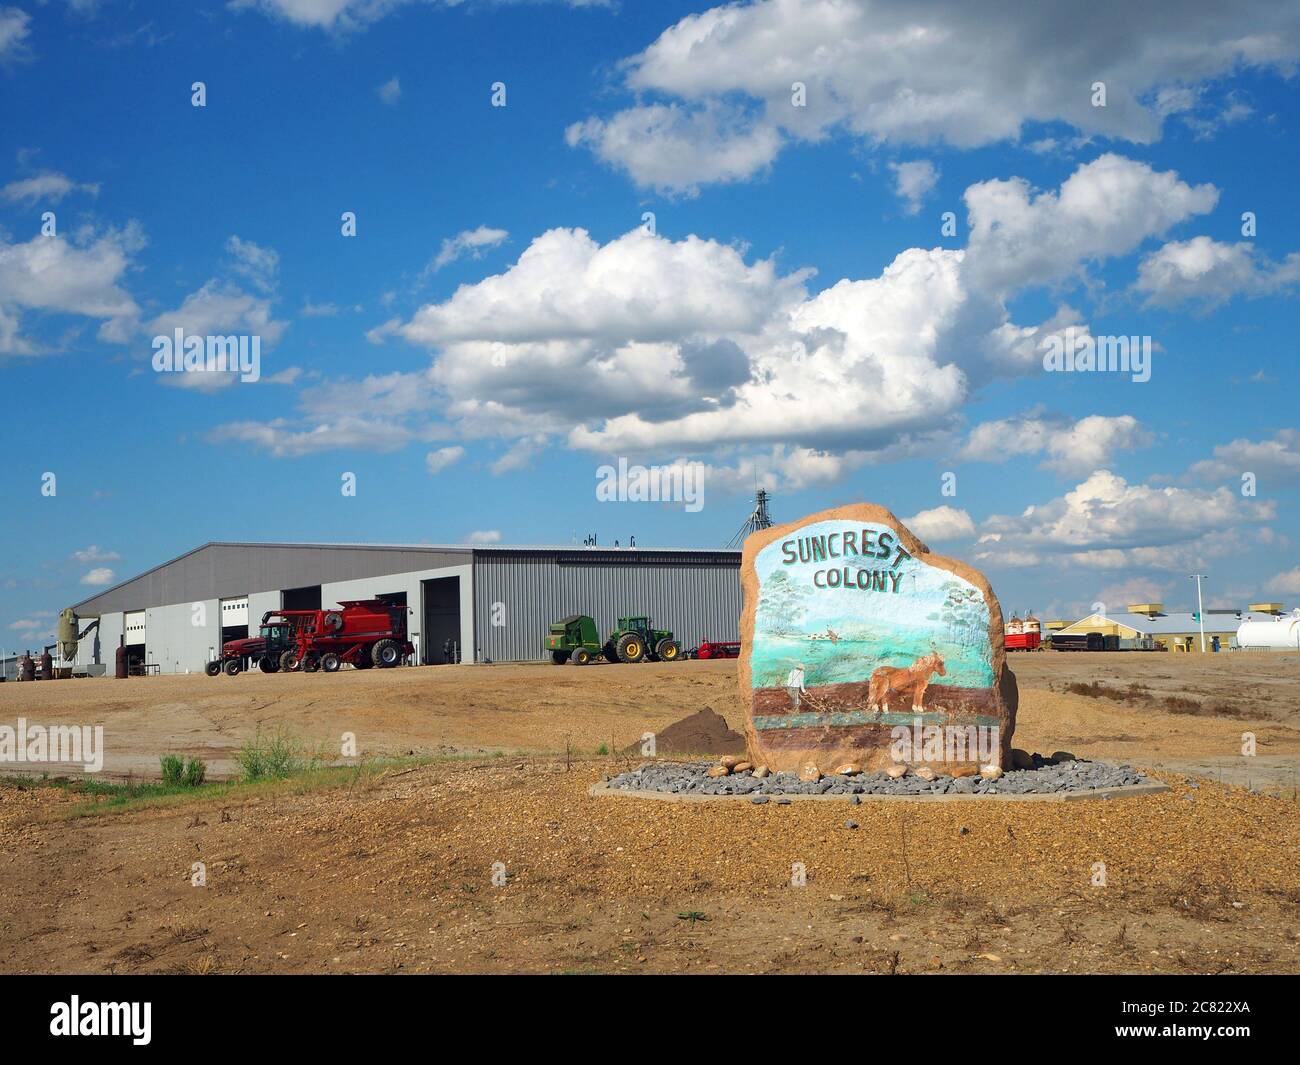 Suncrest Colony sign, Hutterite colony community, near Coronation, Alberta, Canada Stock Photo